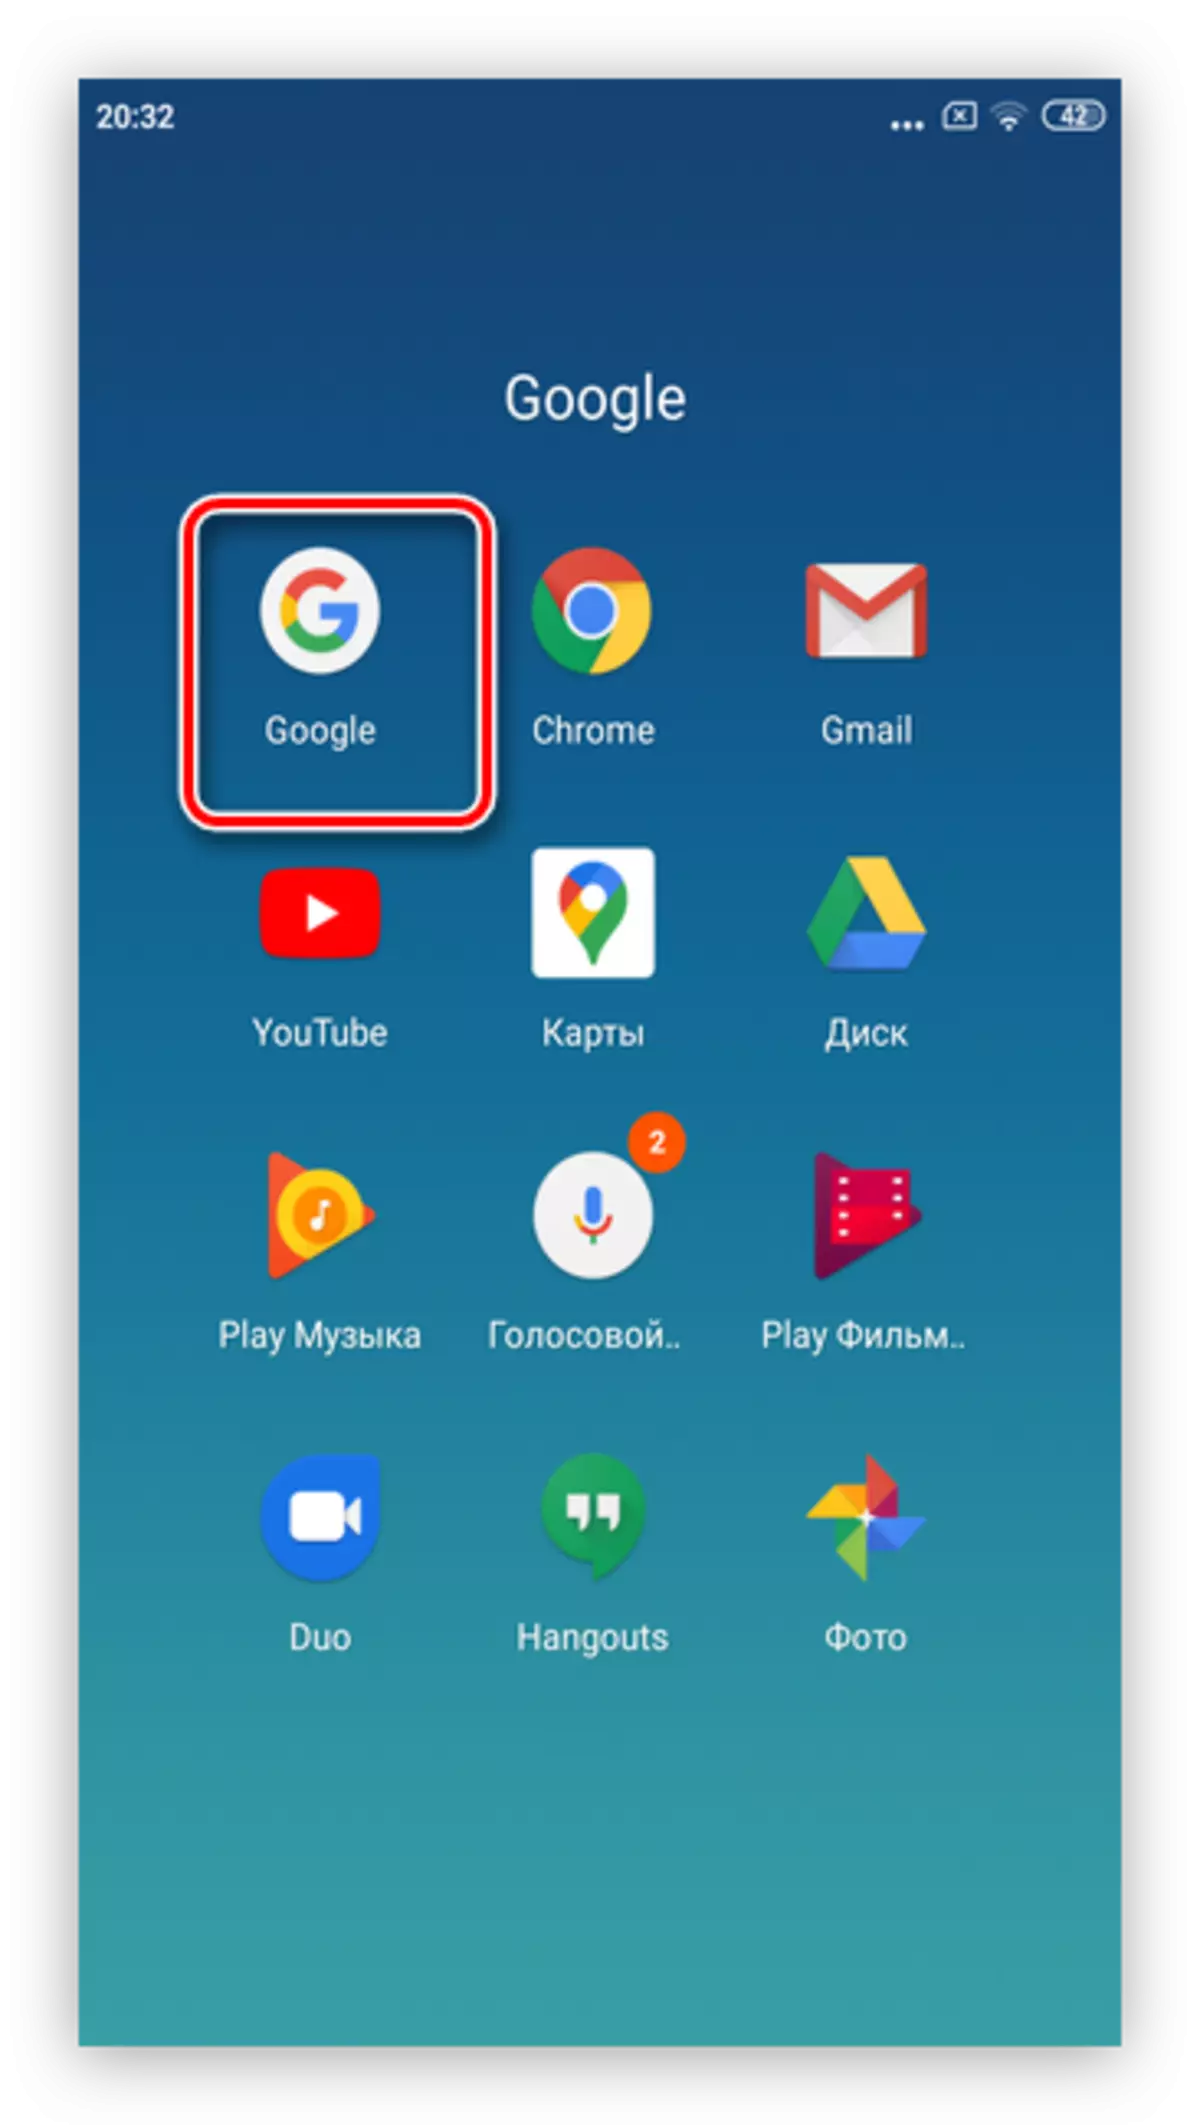 Fur Google App si aad uga saarto xayeysiinta Google ee ku saabsan taleefannada casriga ah ee Android ee nidaamka